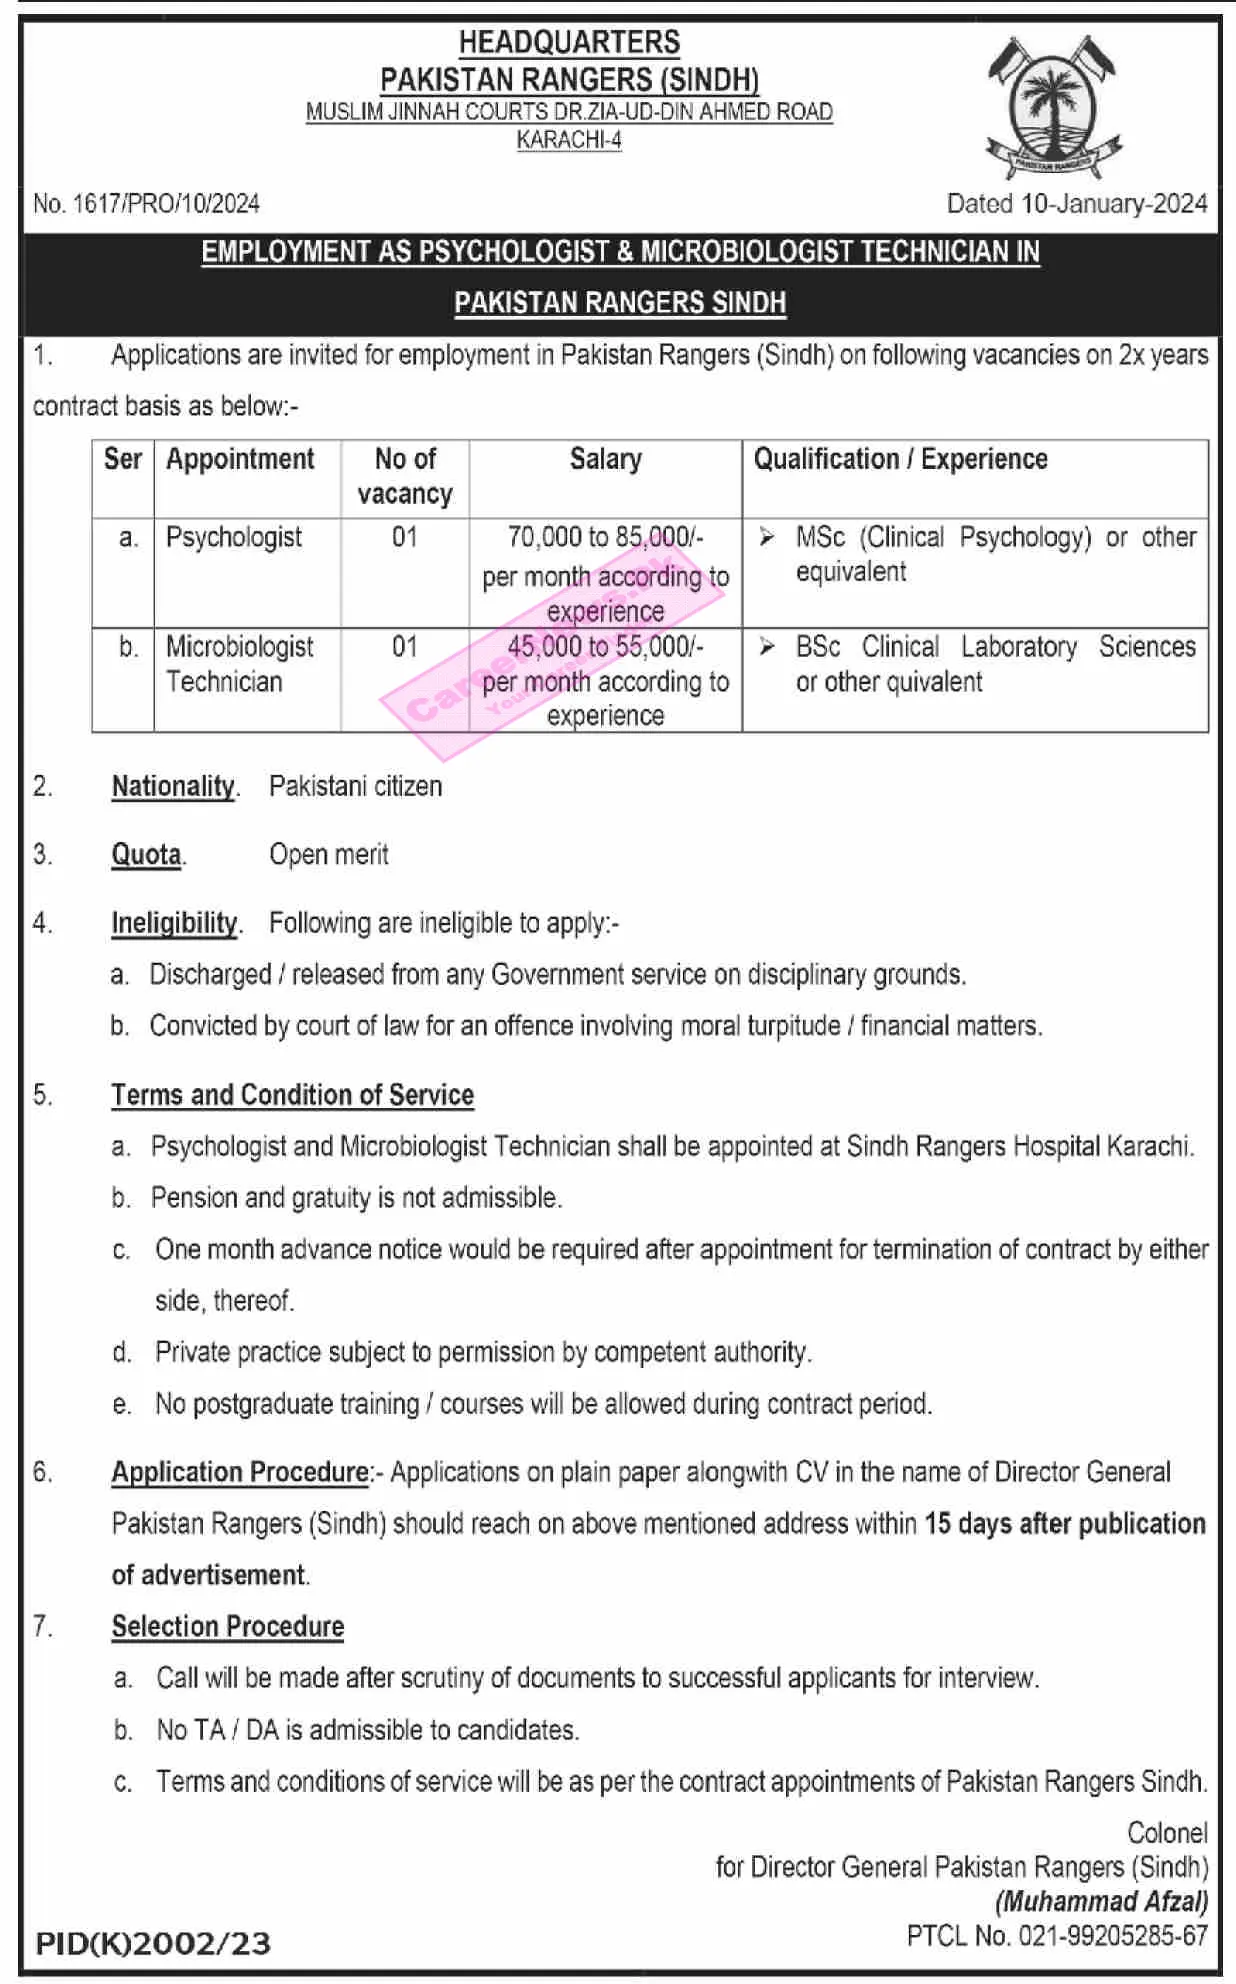 Pakistan Rangers Sindh Jobs 2024 - Complete Details of Apply Procedure